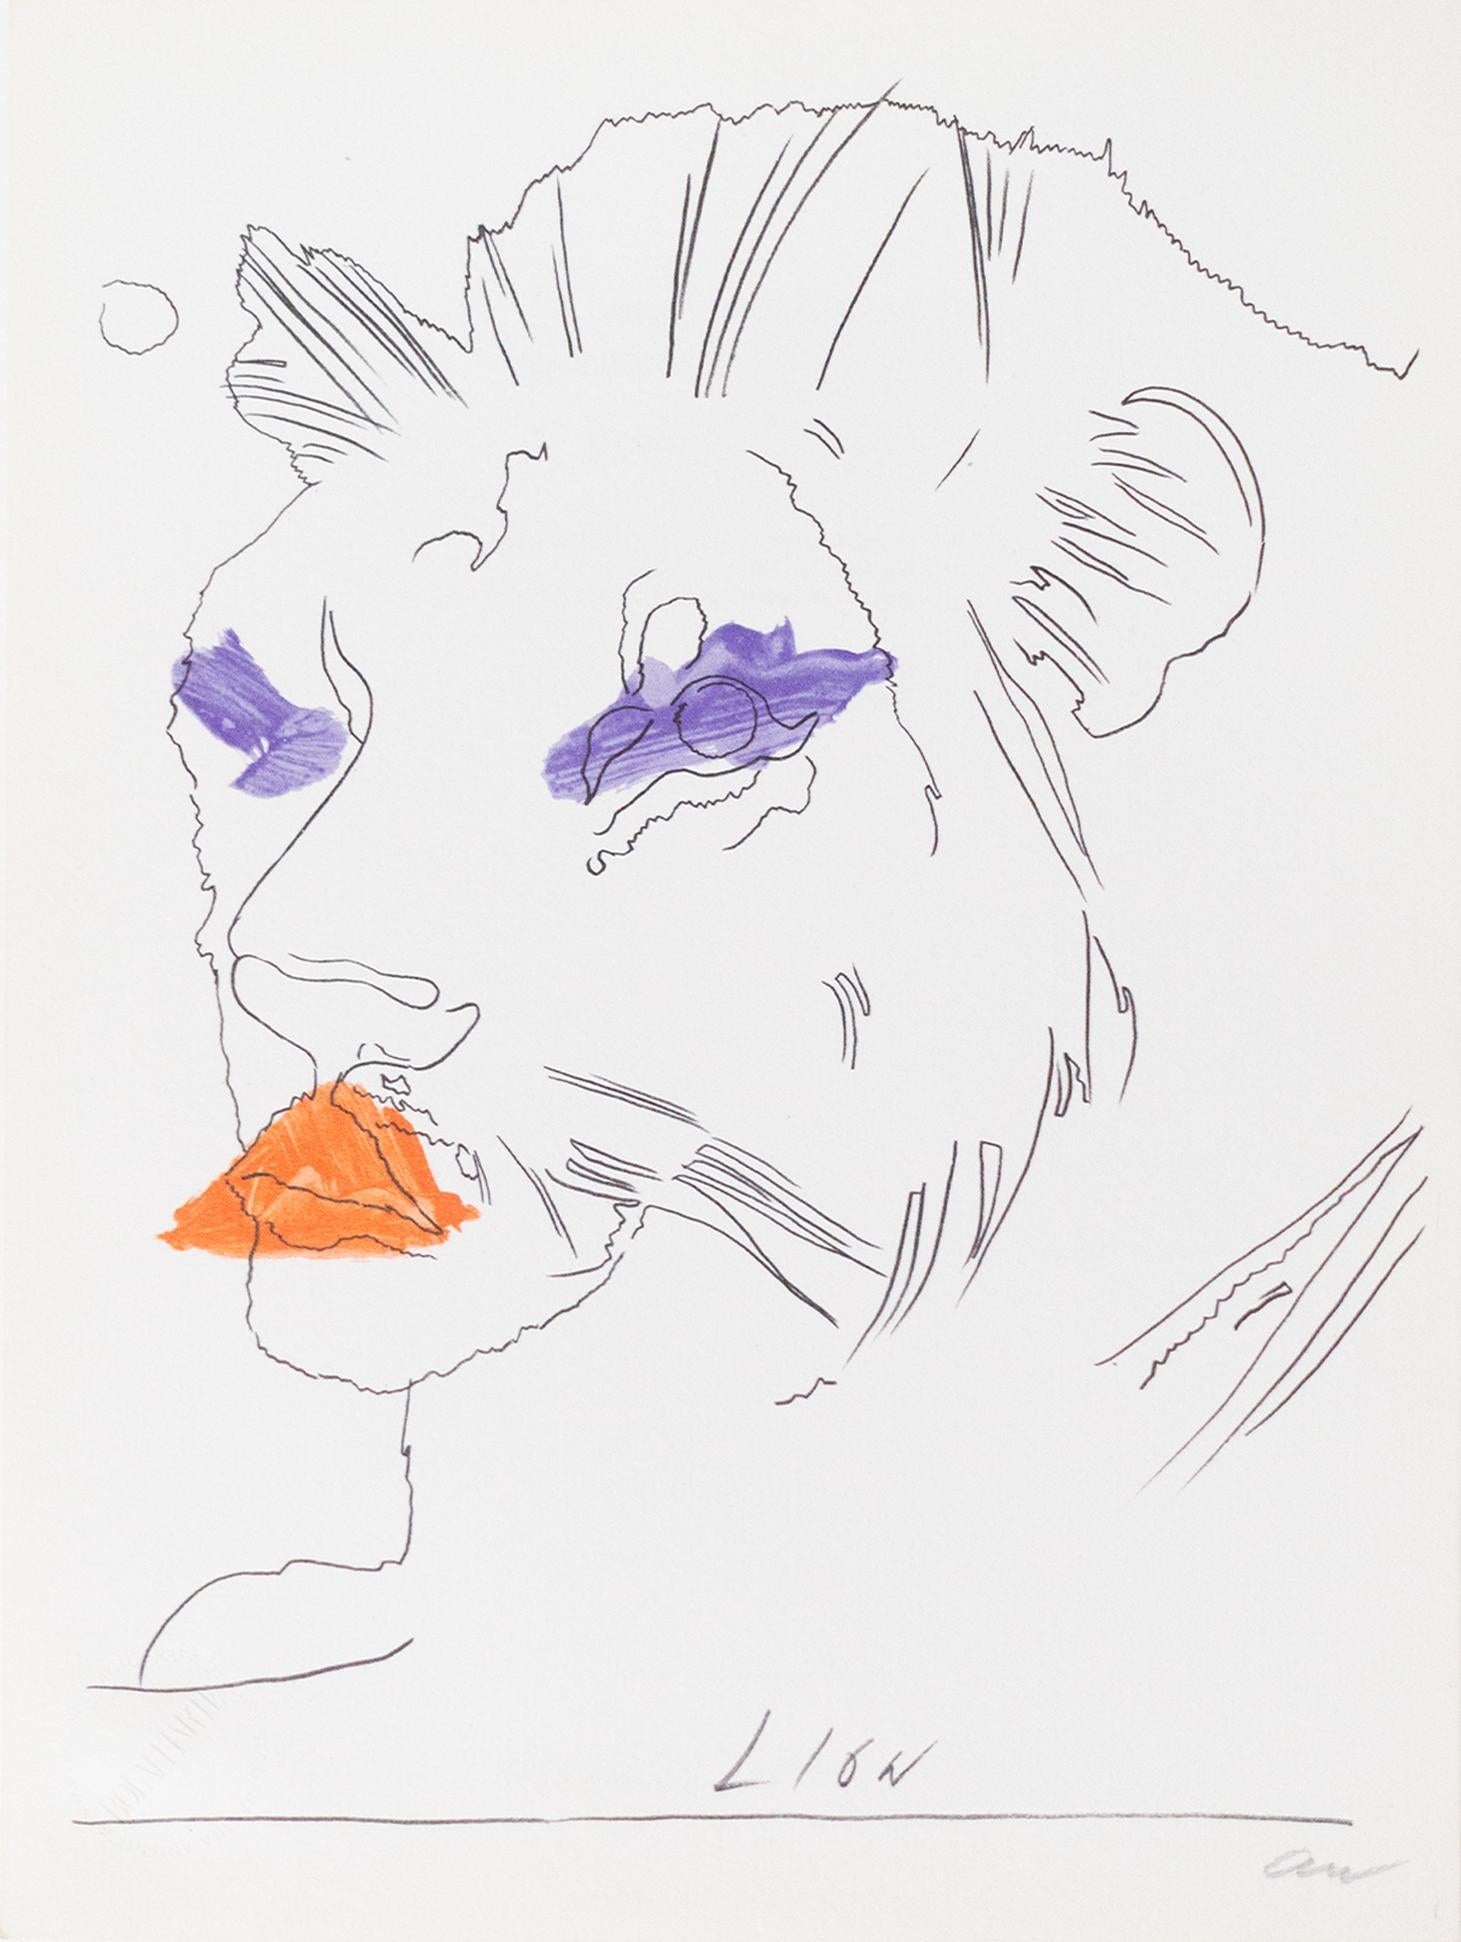 Original-Fotolithografie auf Papier als Teil von Andy Warhols Original-Edition des Werks "THE LION", das speziell für die Serie "LO ZODIACO/The Zodiac" für "BOLAFFI ARTE" geschaffen wurde.
Die Auflage betrug 5.000 Exemplare, die von 1 bis 5.000